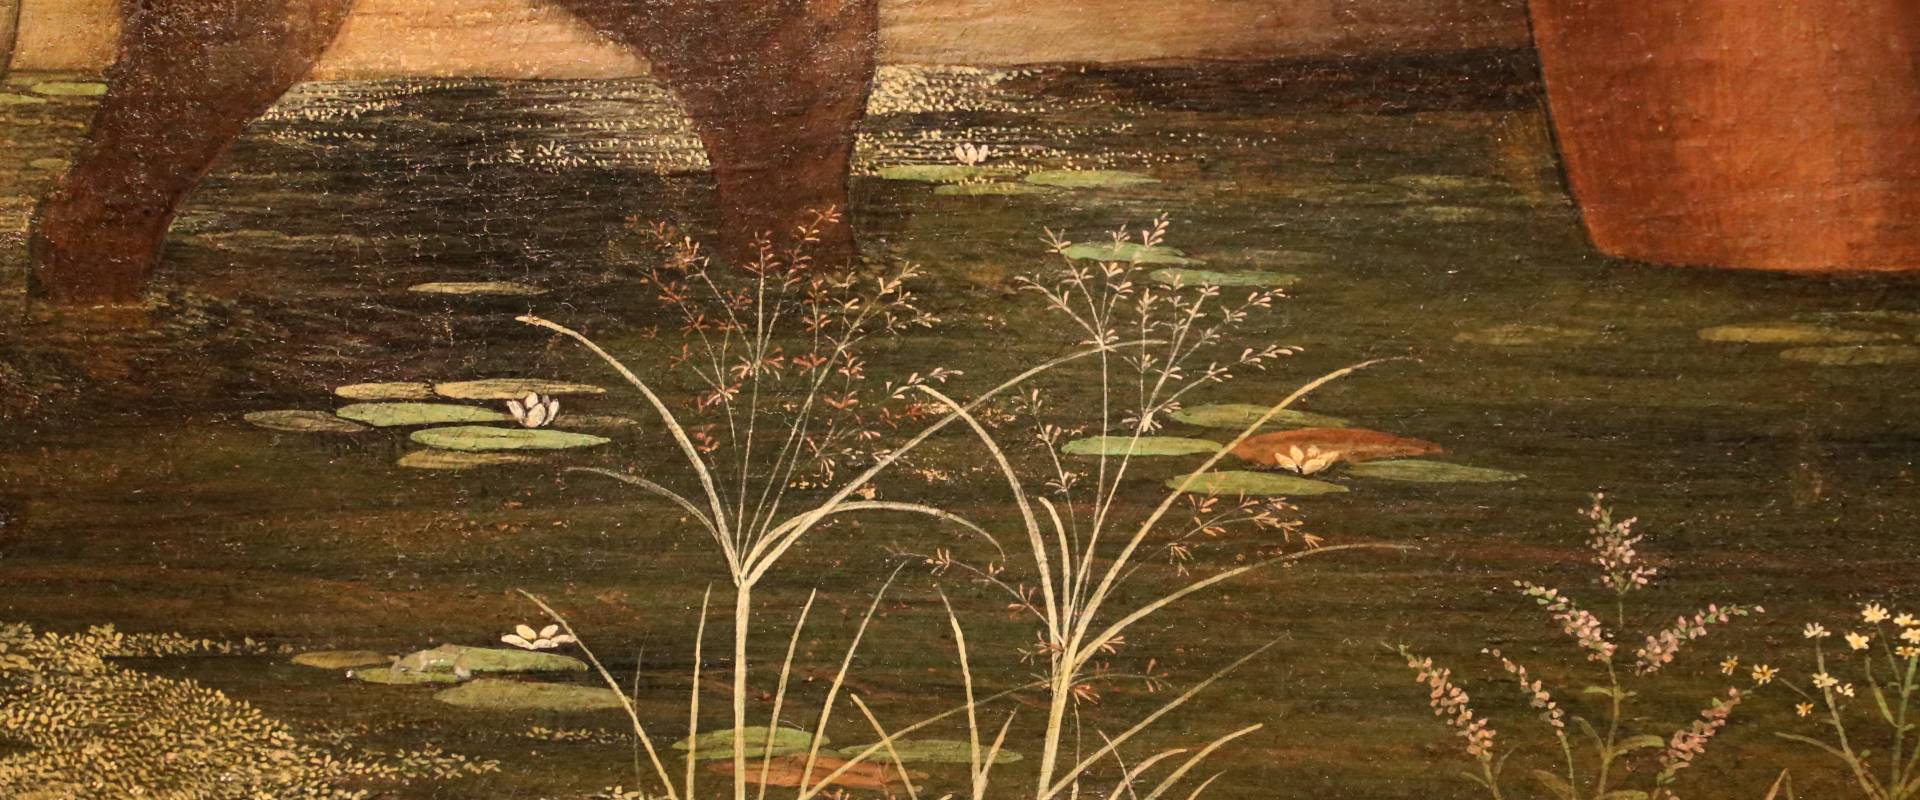 Andrea mantegna, minerva scaccia i vizi dal giardino delle virtù, 1497-1502 ca. (louvre) 28 foto di Sailko